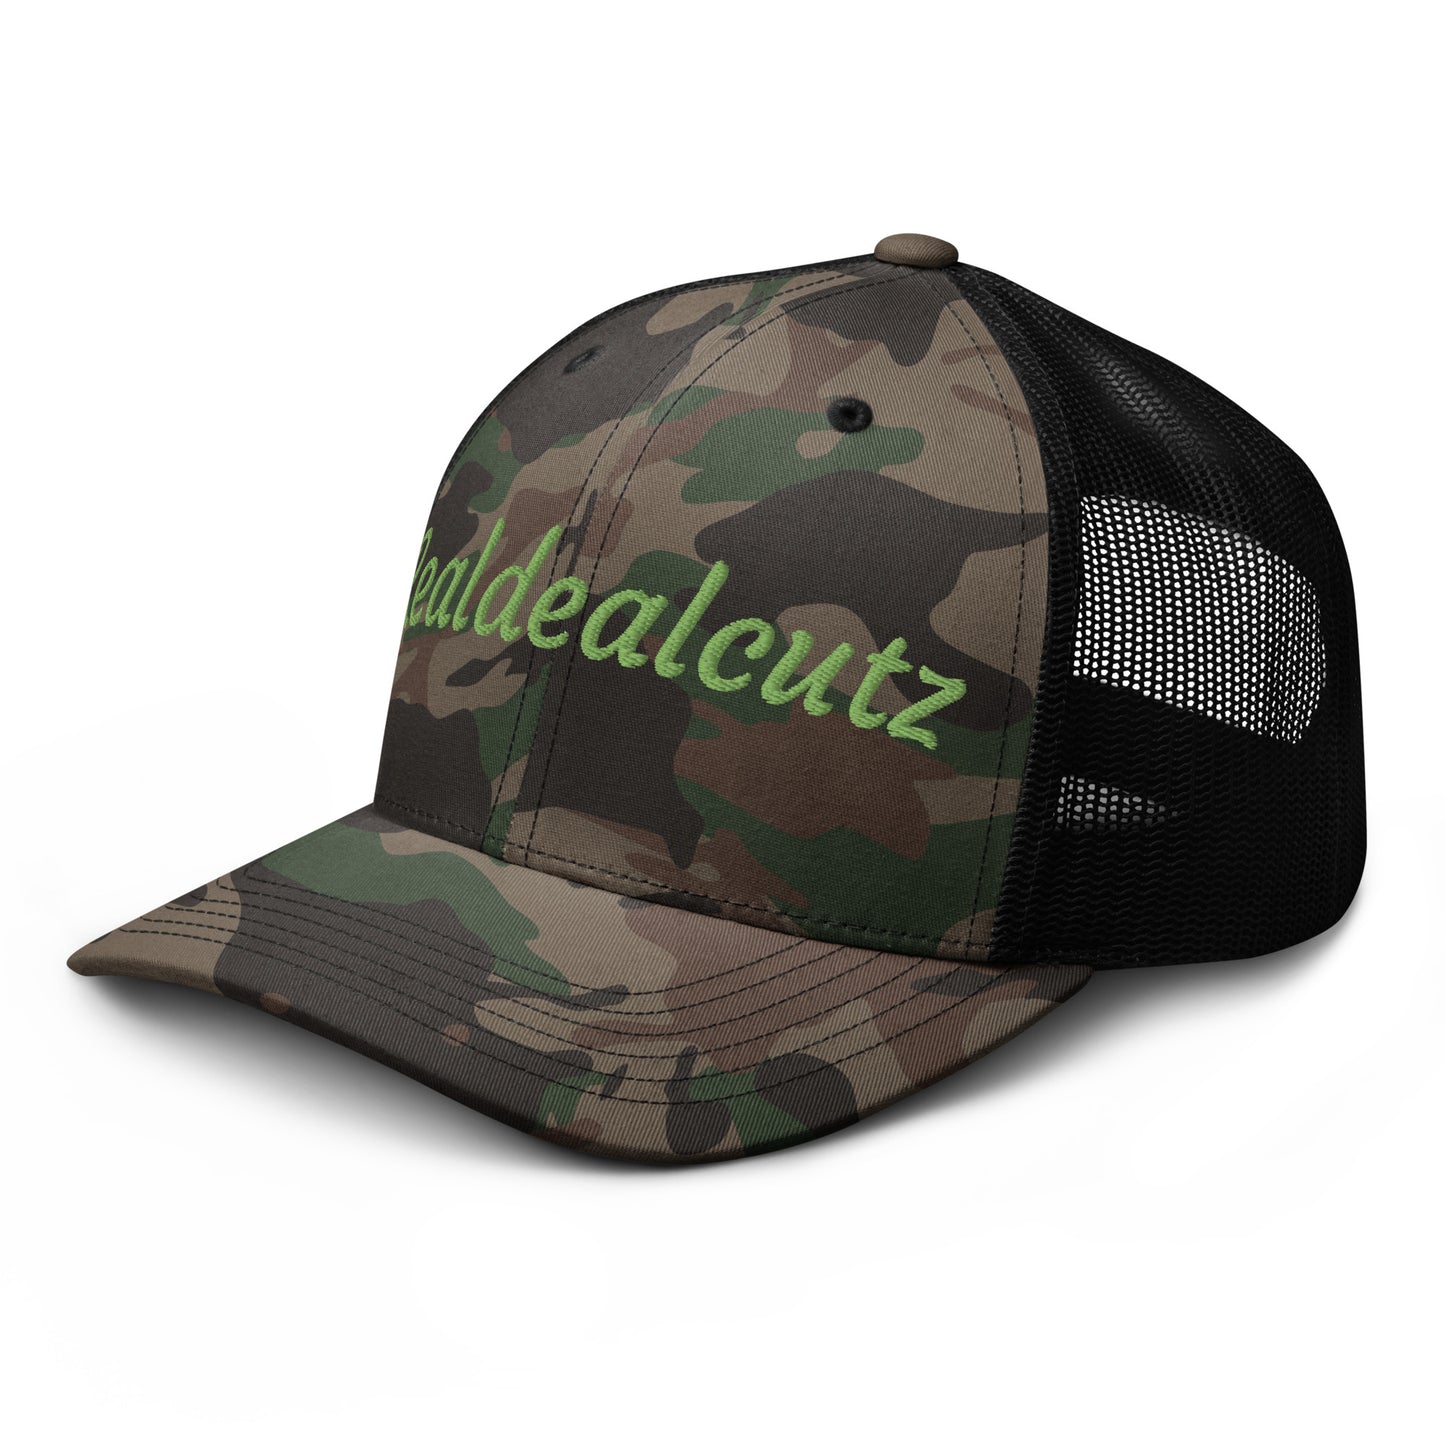 Realdealcutz Camouflage trucker hat